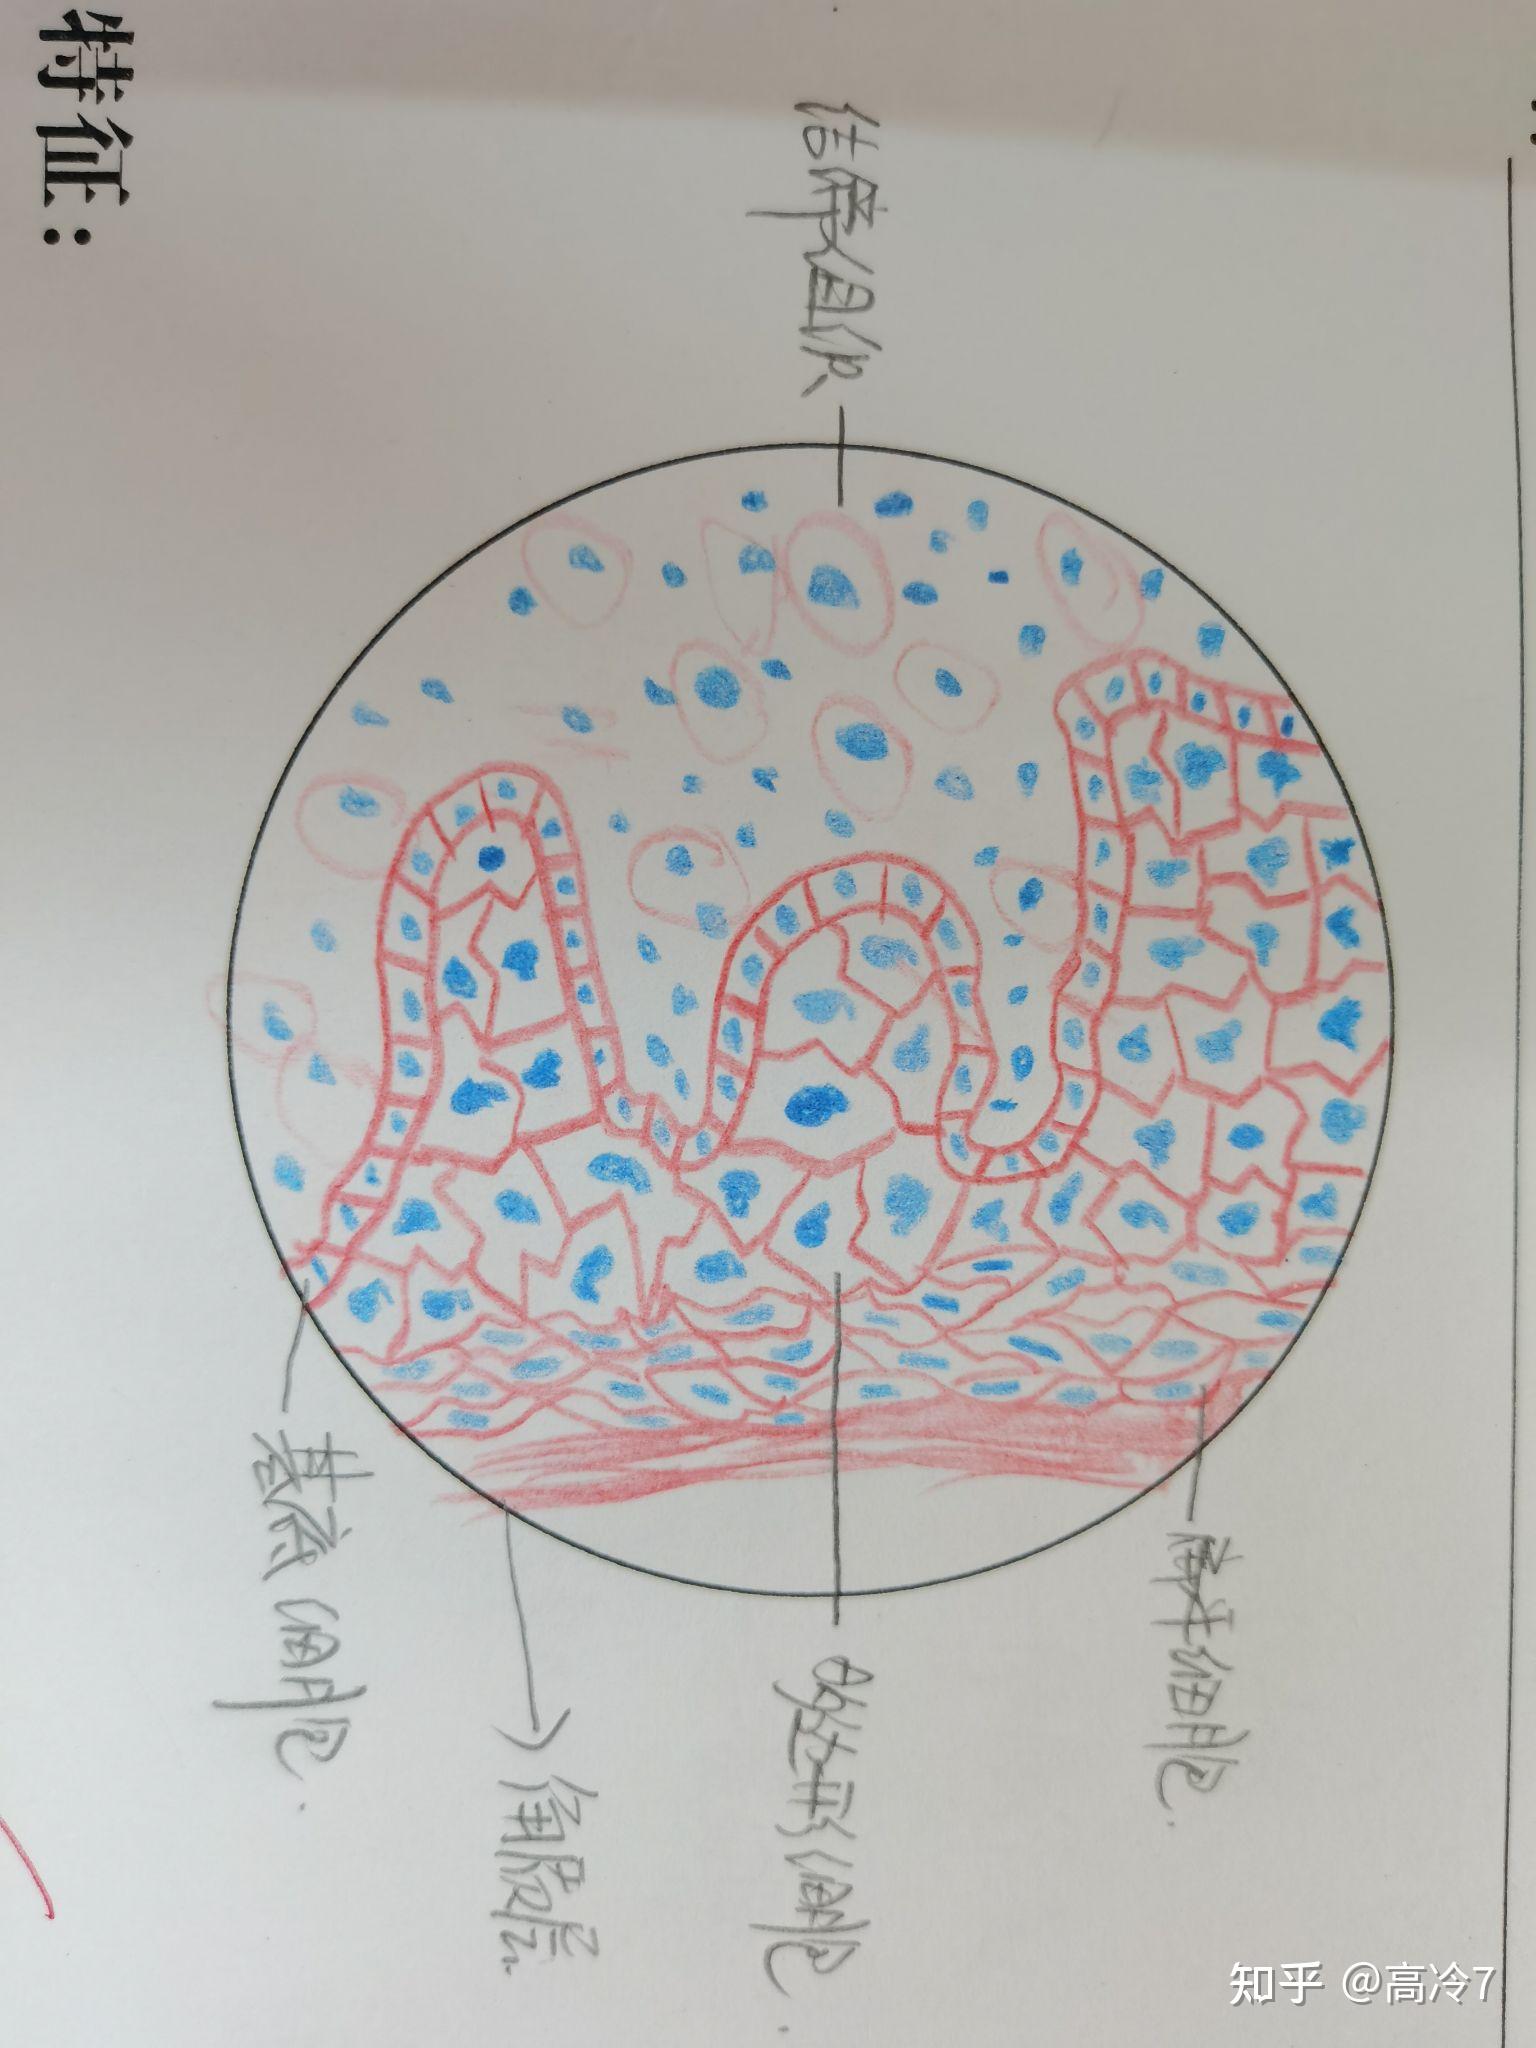 组织与胚胎学红蓝铅笔图作为一个新生医学生做个记录吧